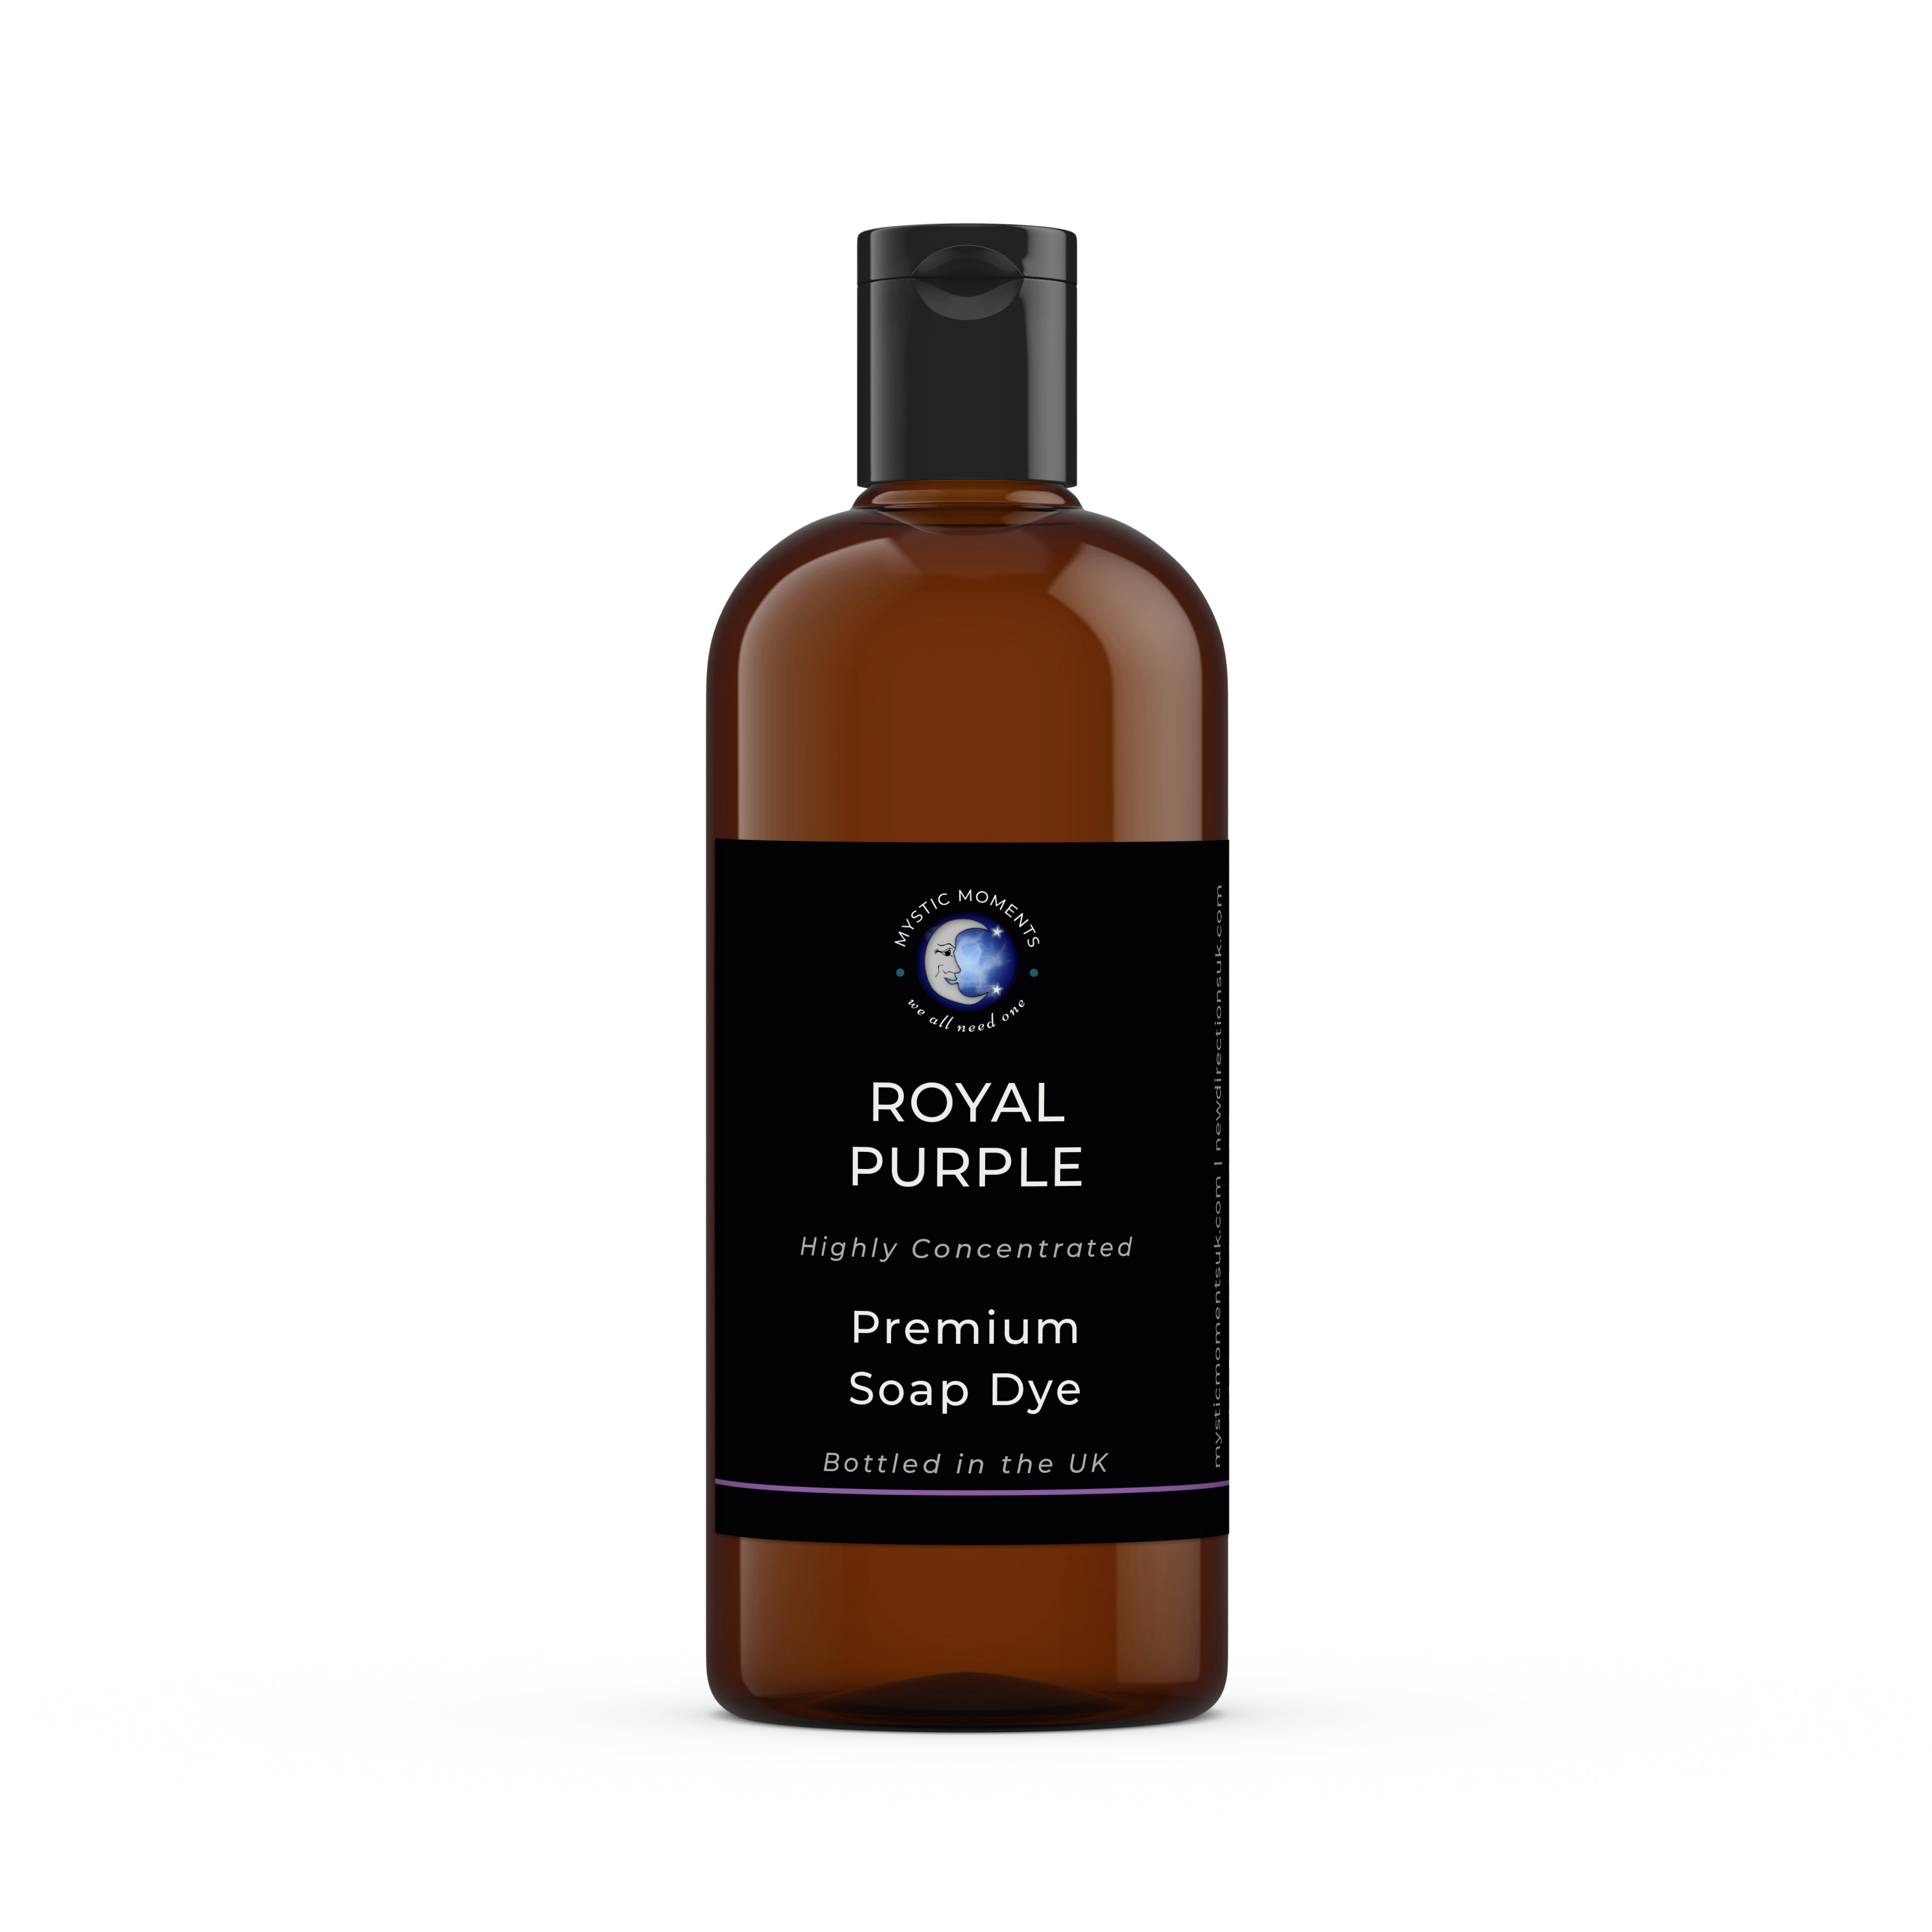 Royal Purple Soap Dye